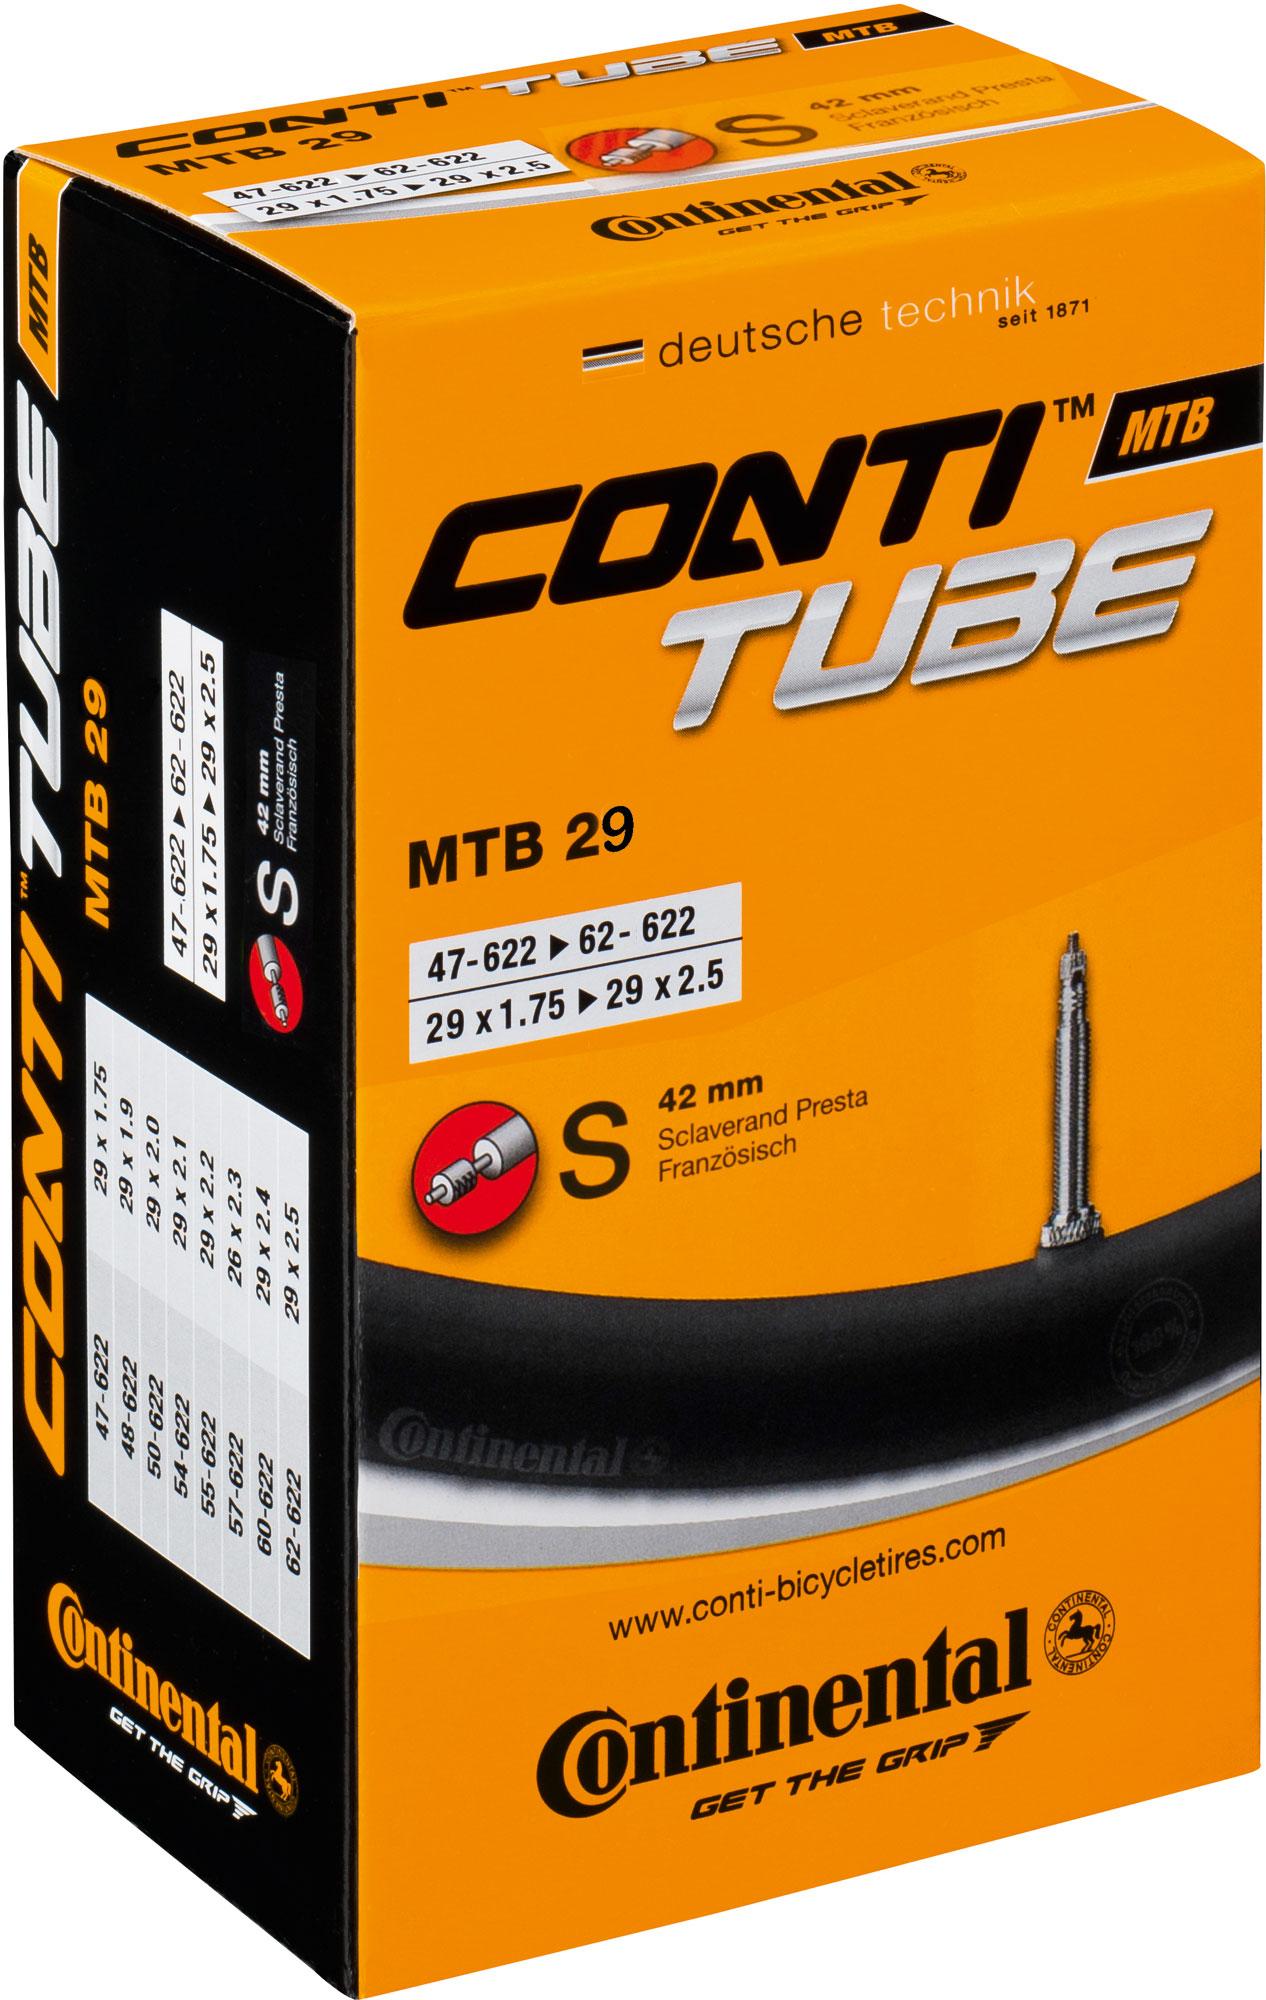 Continental Quality 29er Mtb Inner Tube - Black